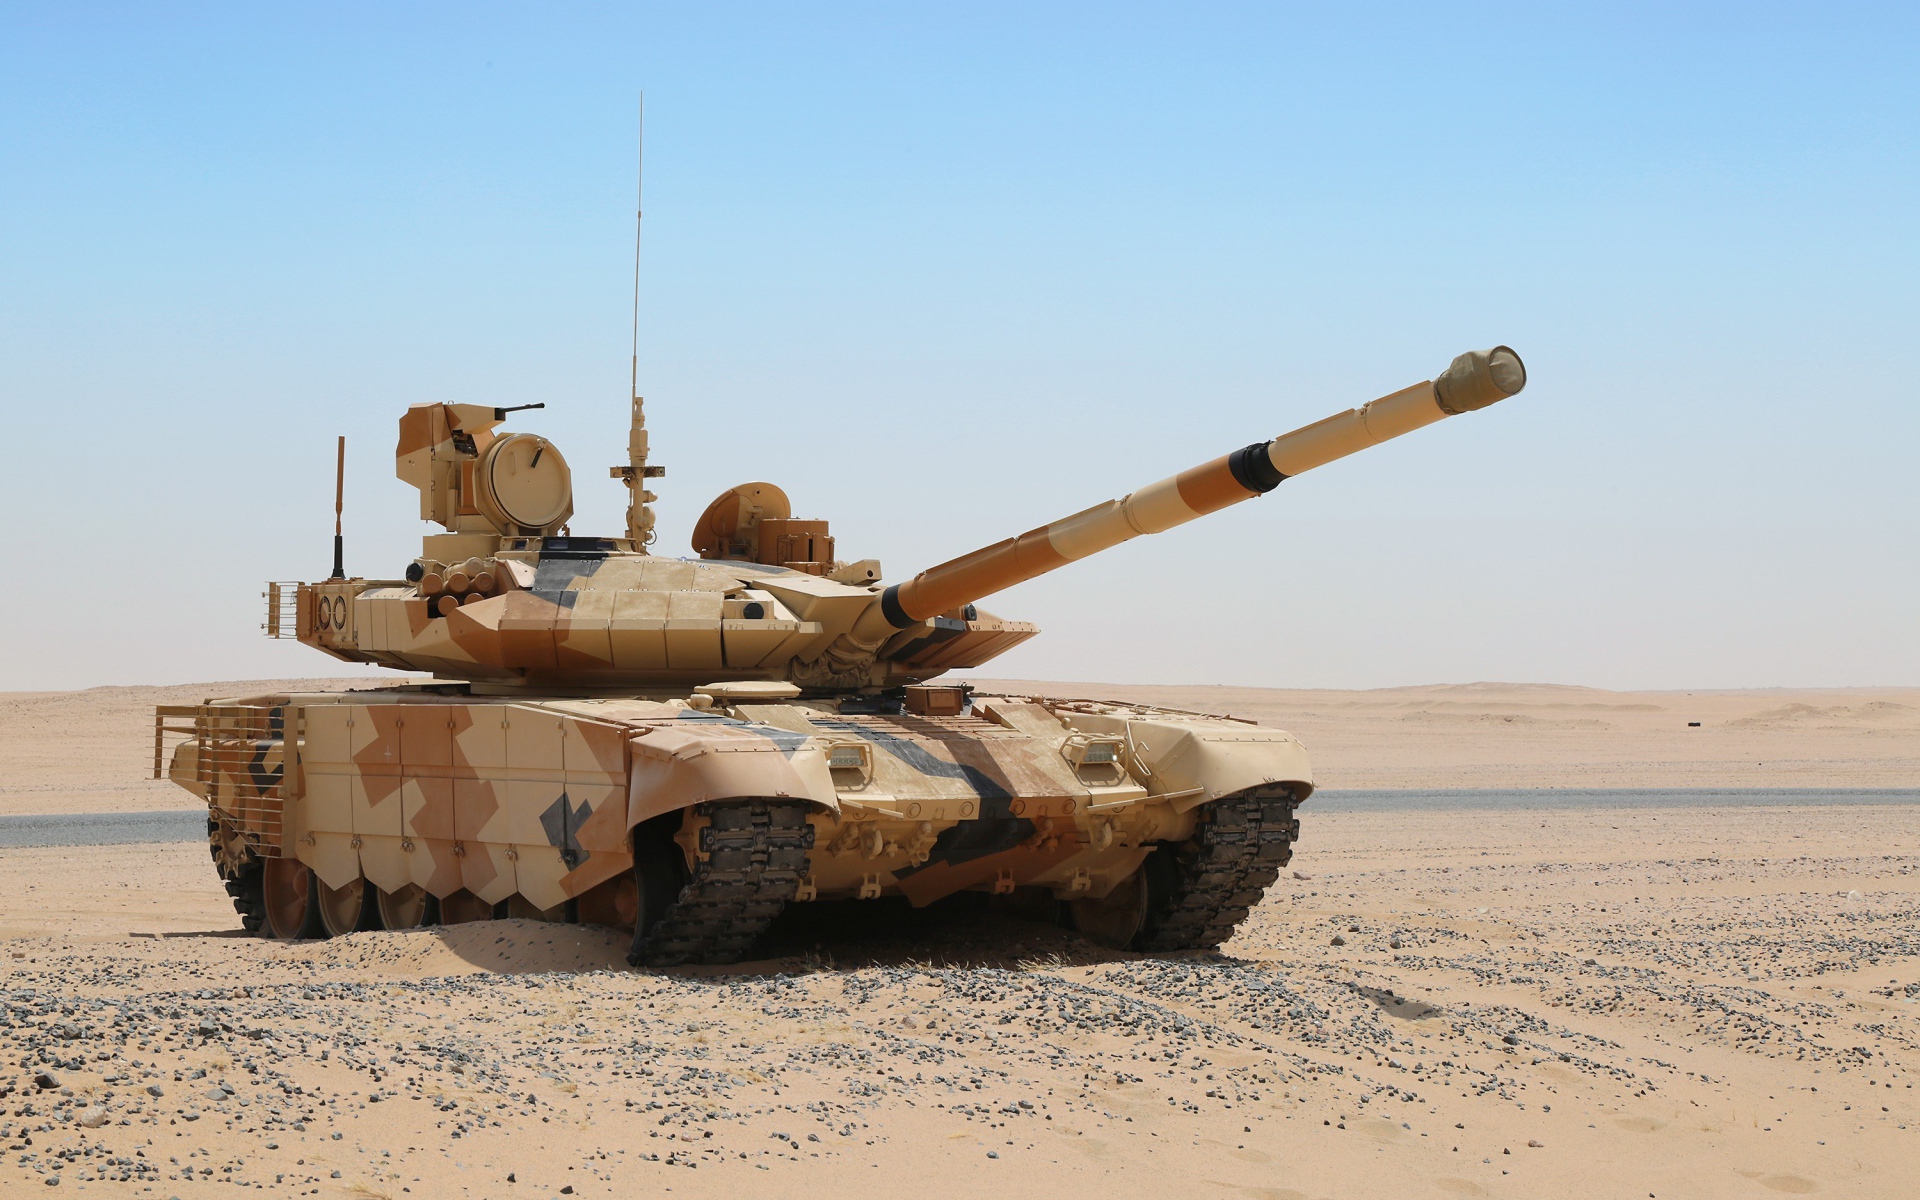 Tank T-90 in the desert against the blue sky